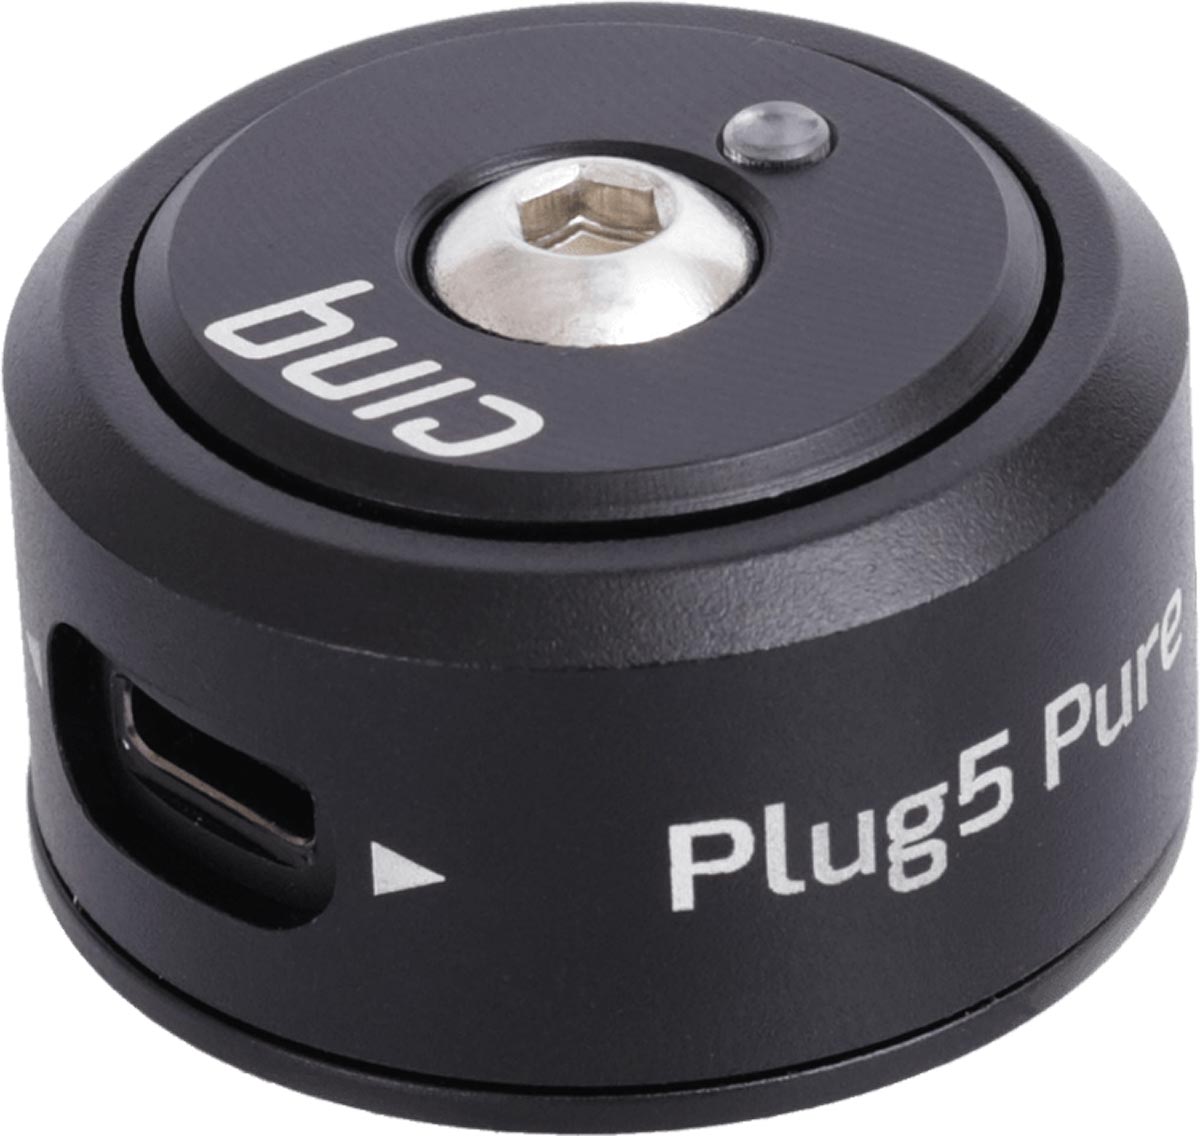 cinq plug5 pure top cap dynamo charger